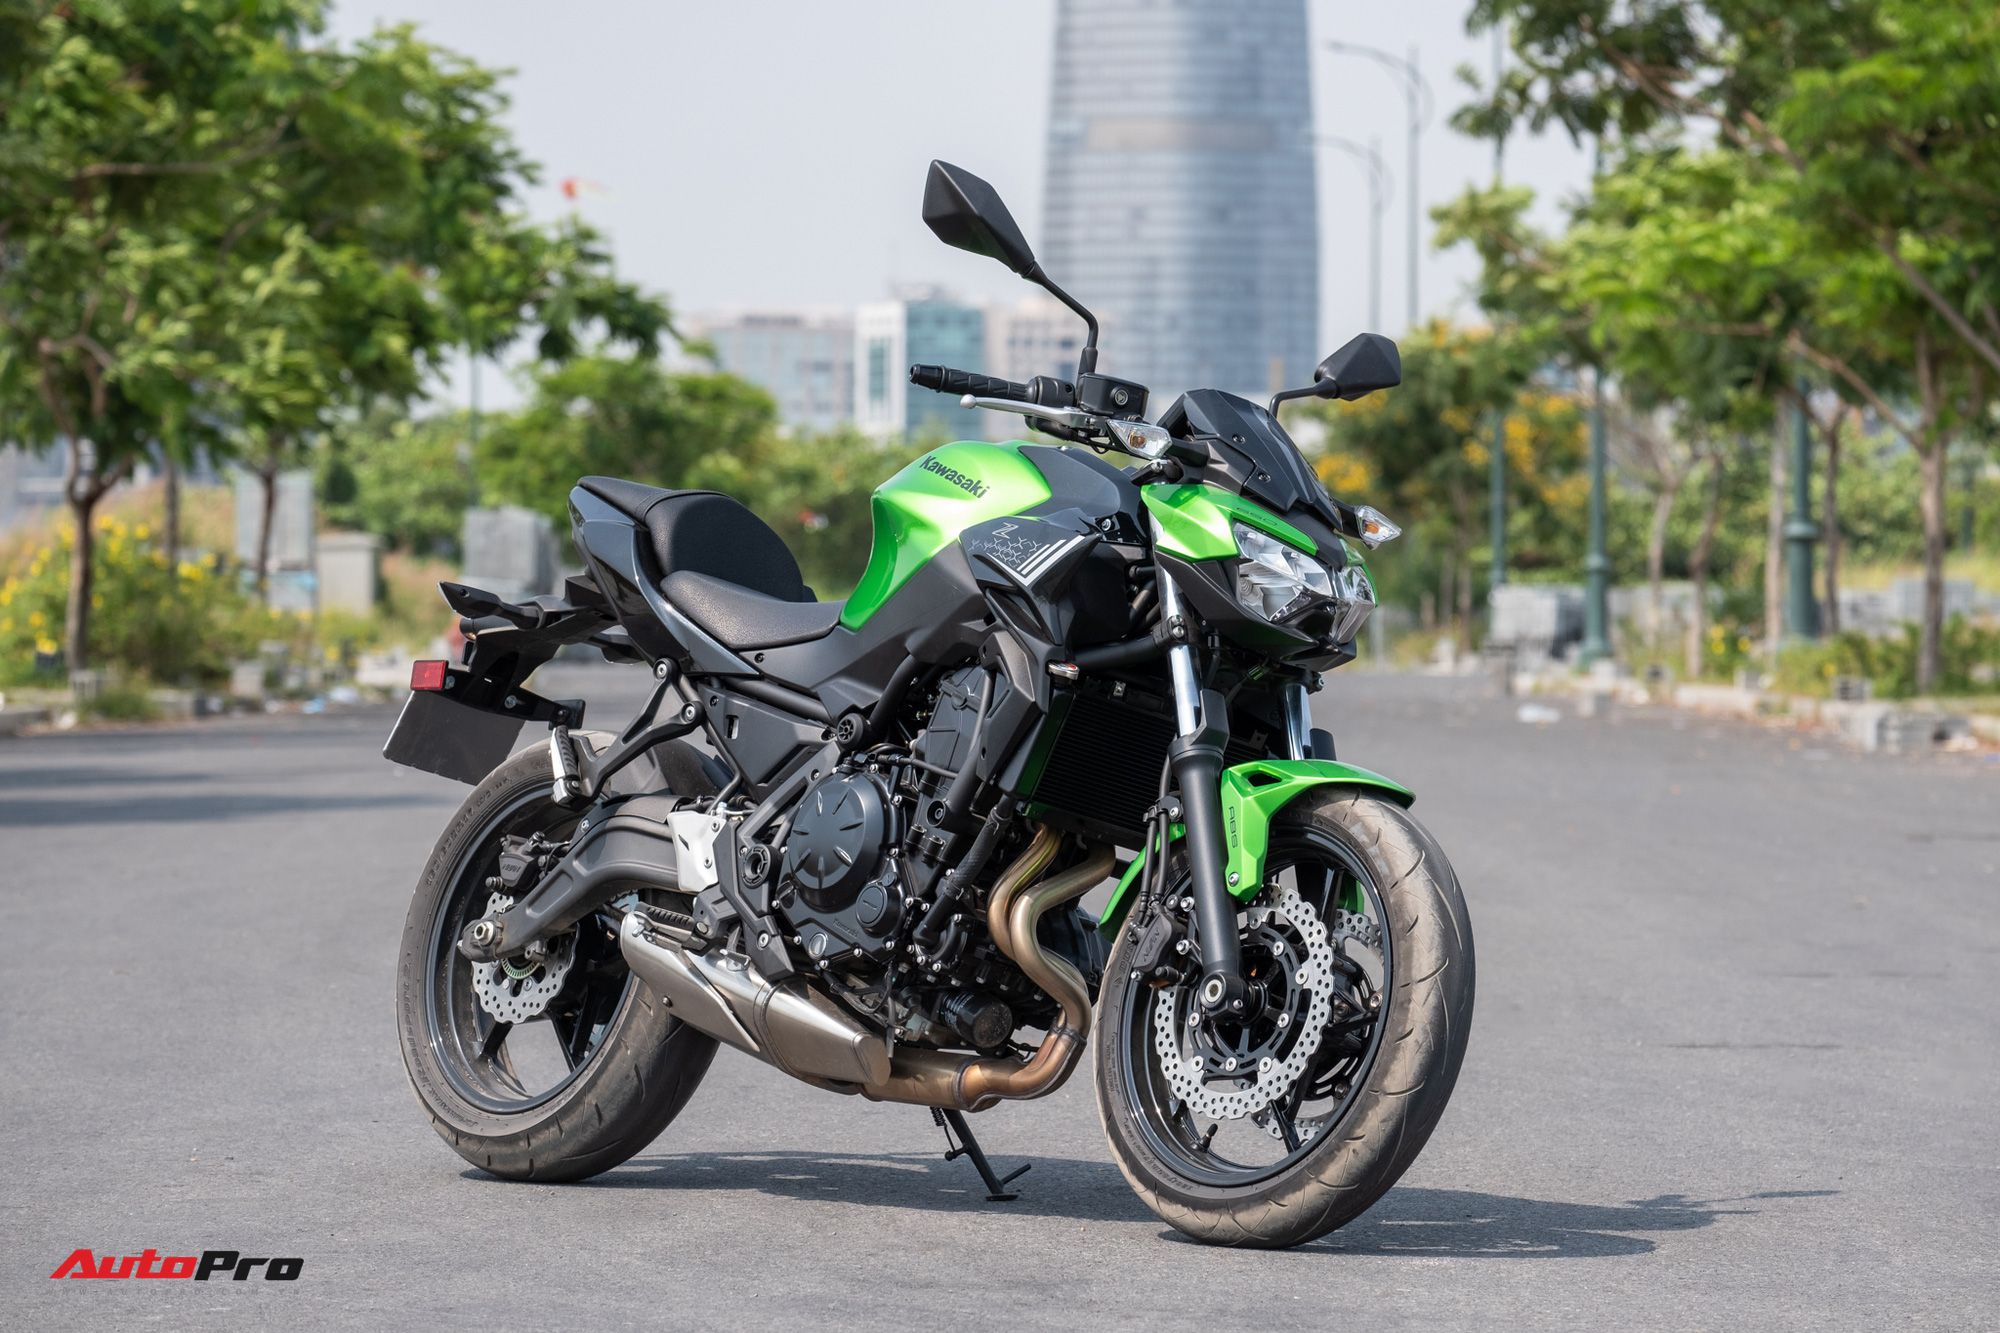 Đánh giá Kawasaki Z650: Naked bike cỡ trung đạt tiêu chí Ngon, bổ, nhưng tạm rẻ - Ảnh 3.